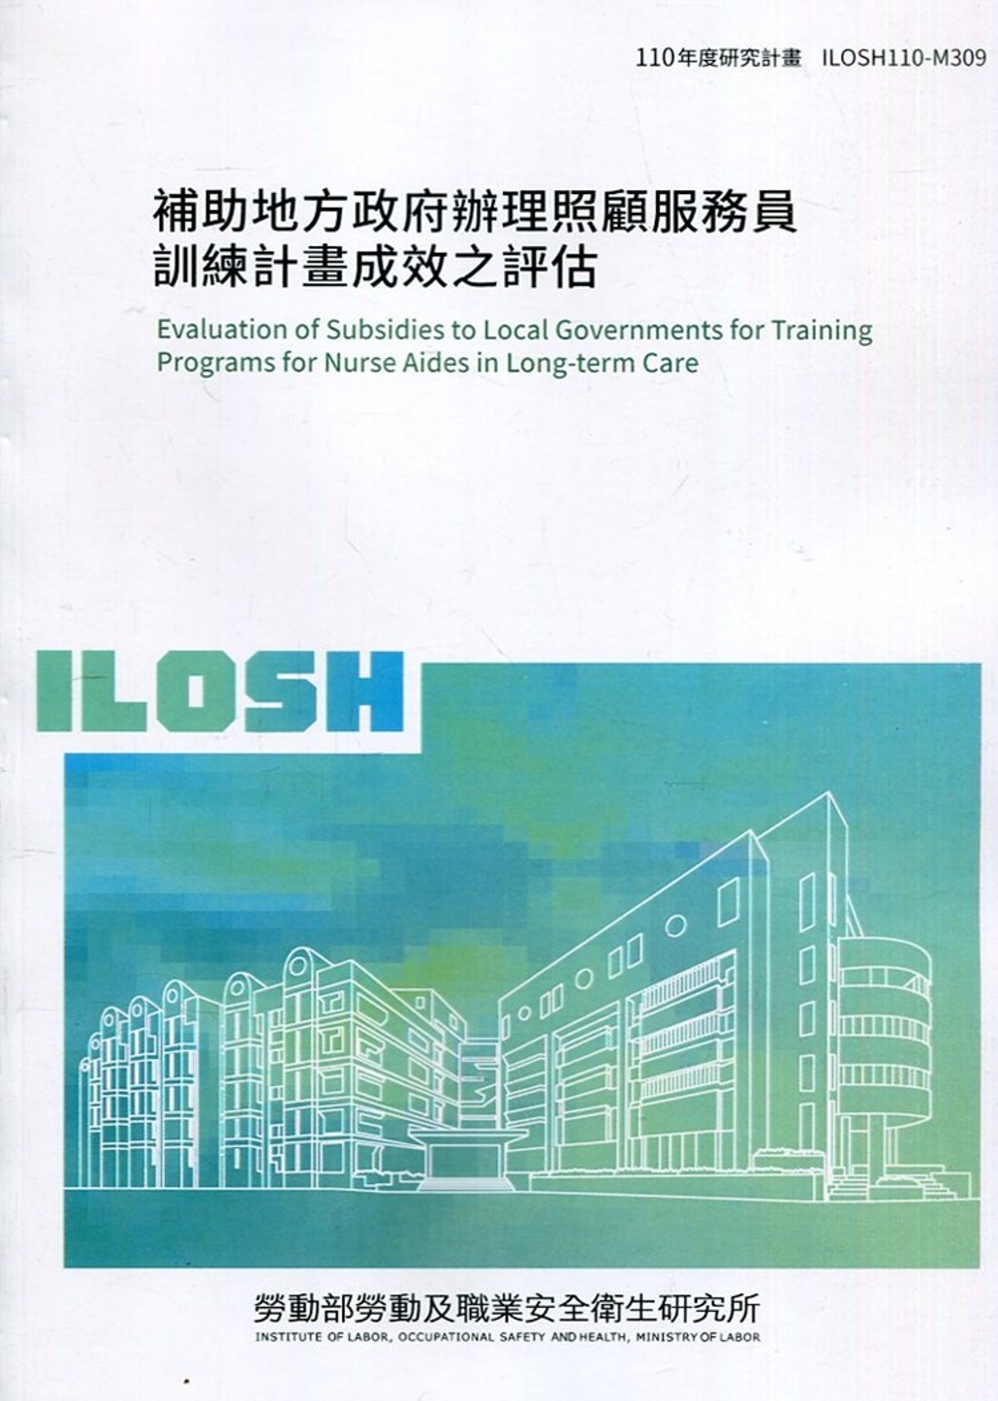 補助地方政府辦理照顧服務員訓練計畫成效之評估 ILOSH110-M309